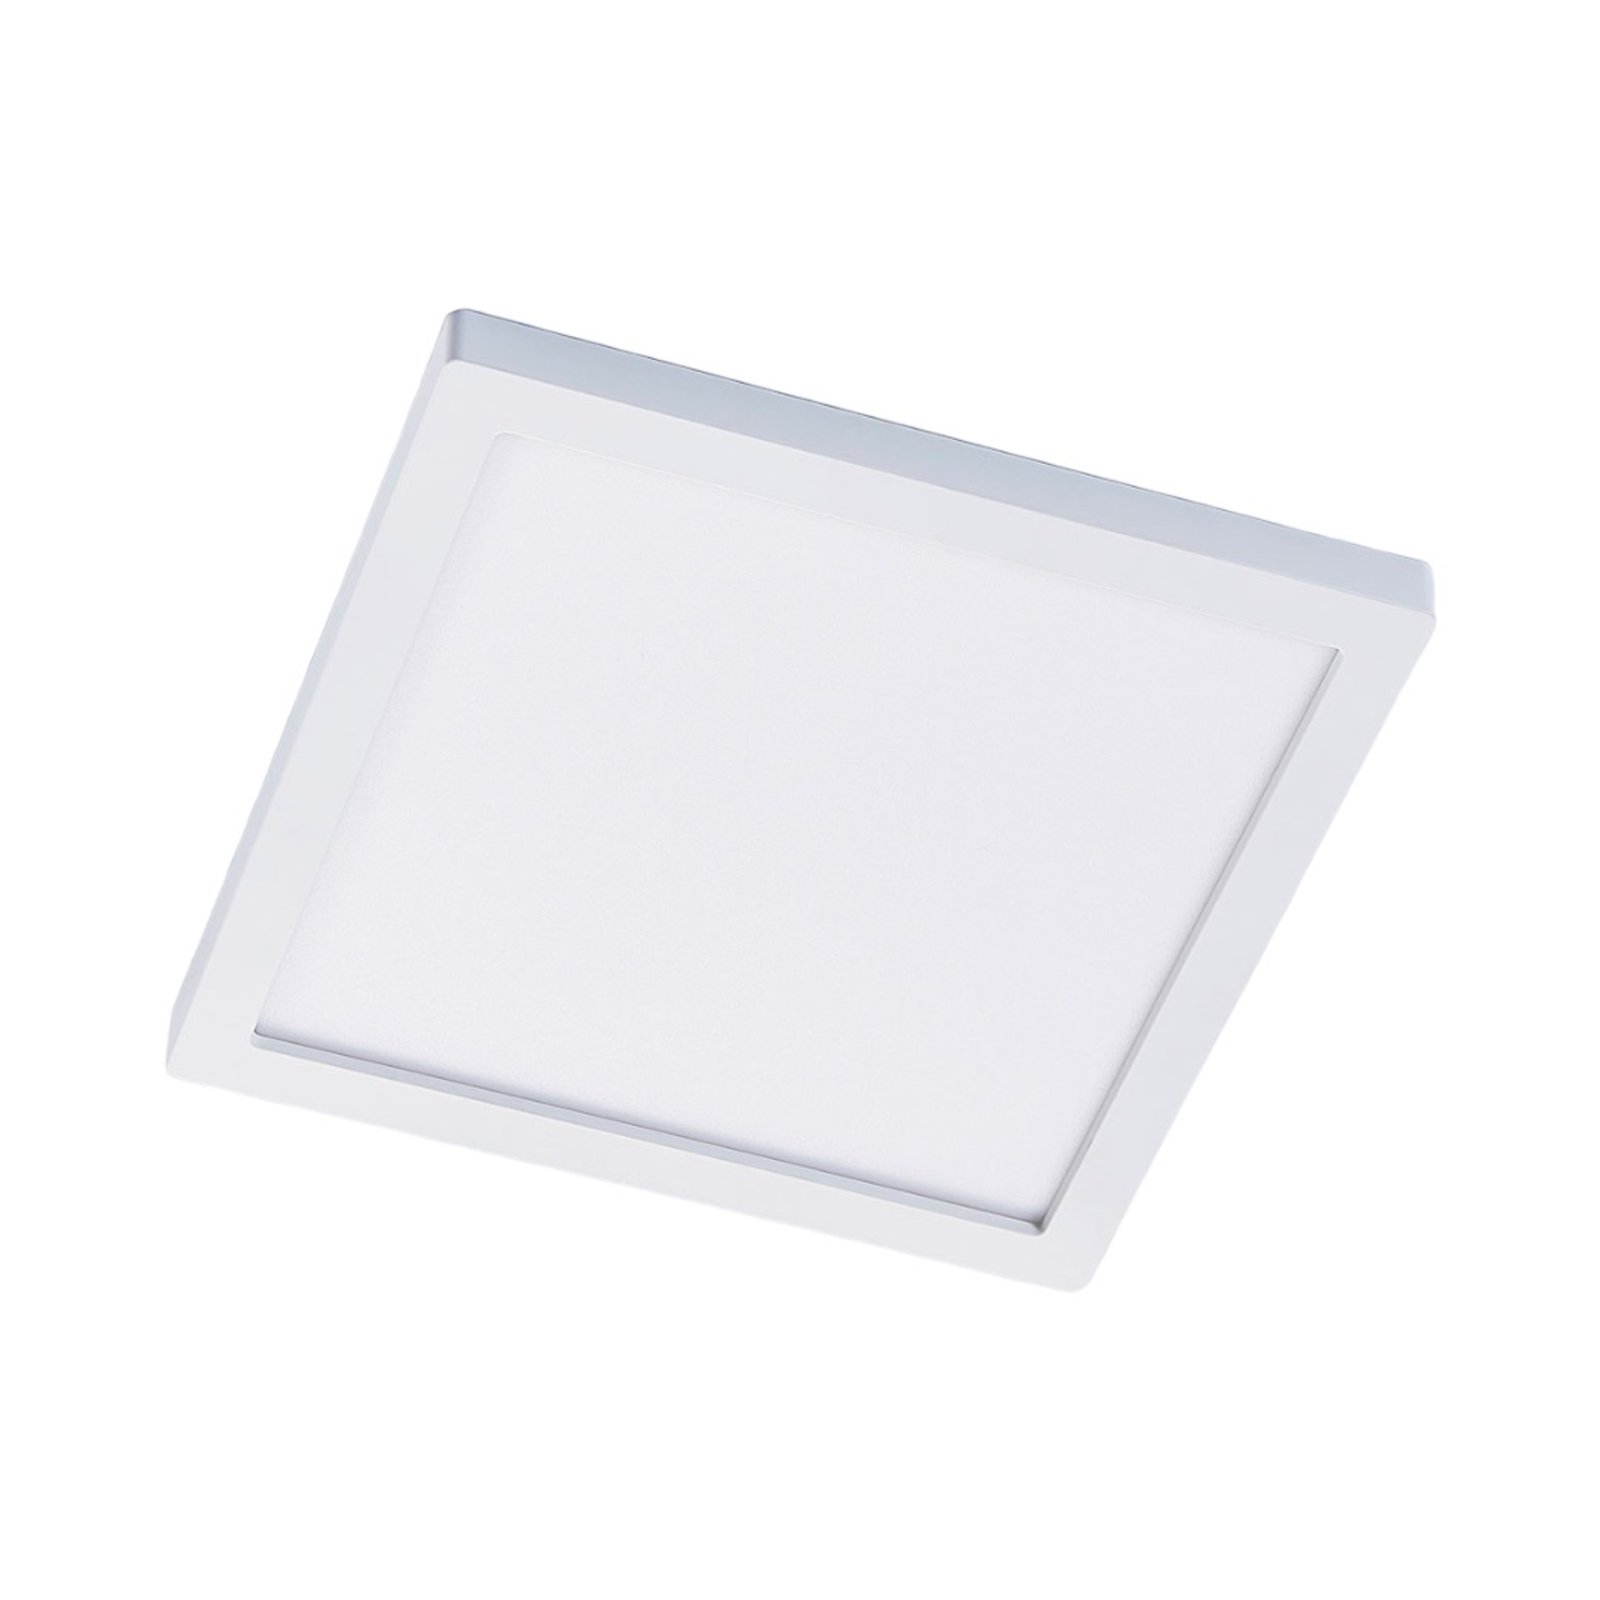 LED-Deckenleuchte Solvie, weiß, eckig, 30 x 30 cm